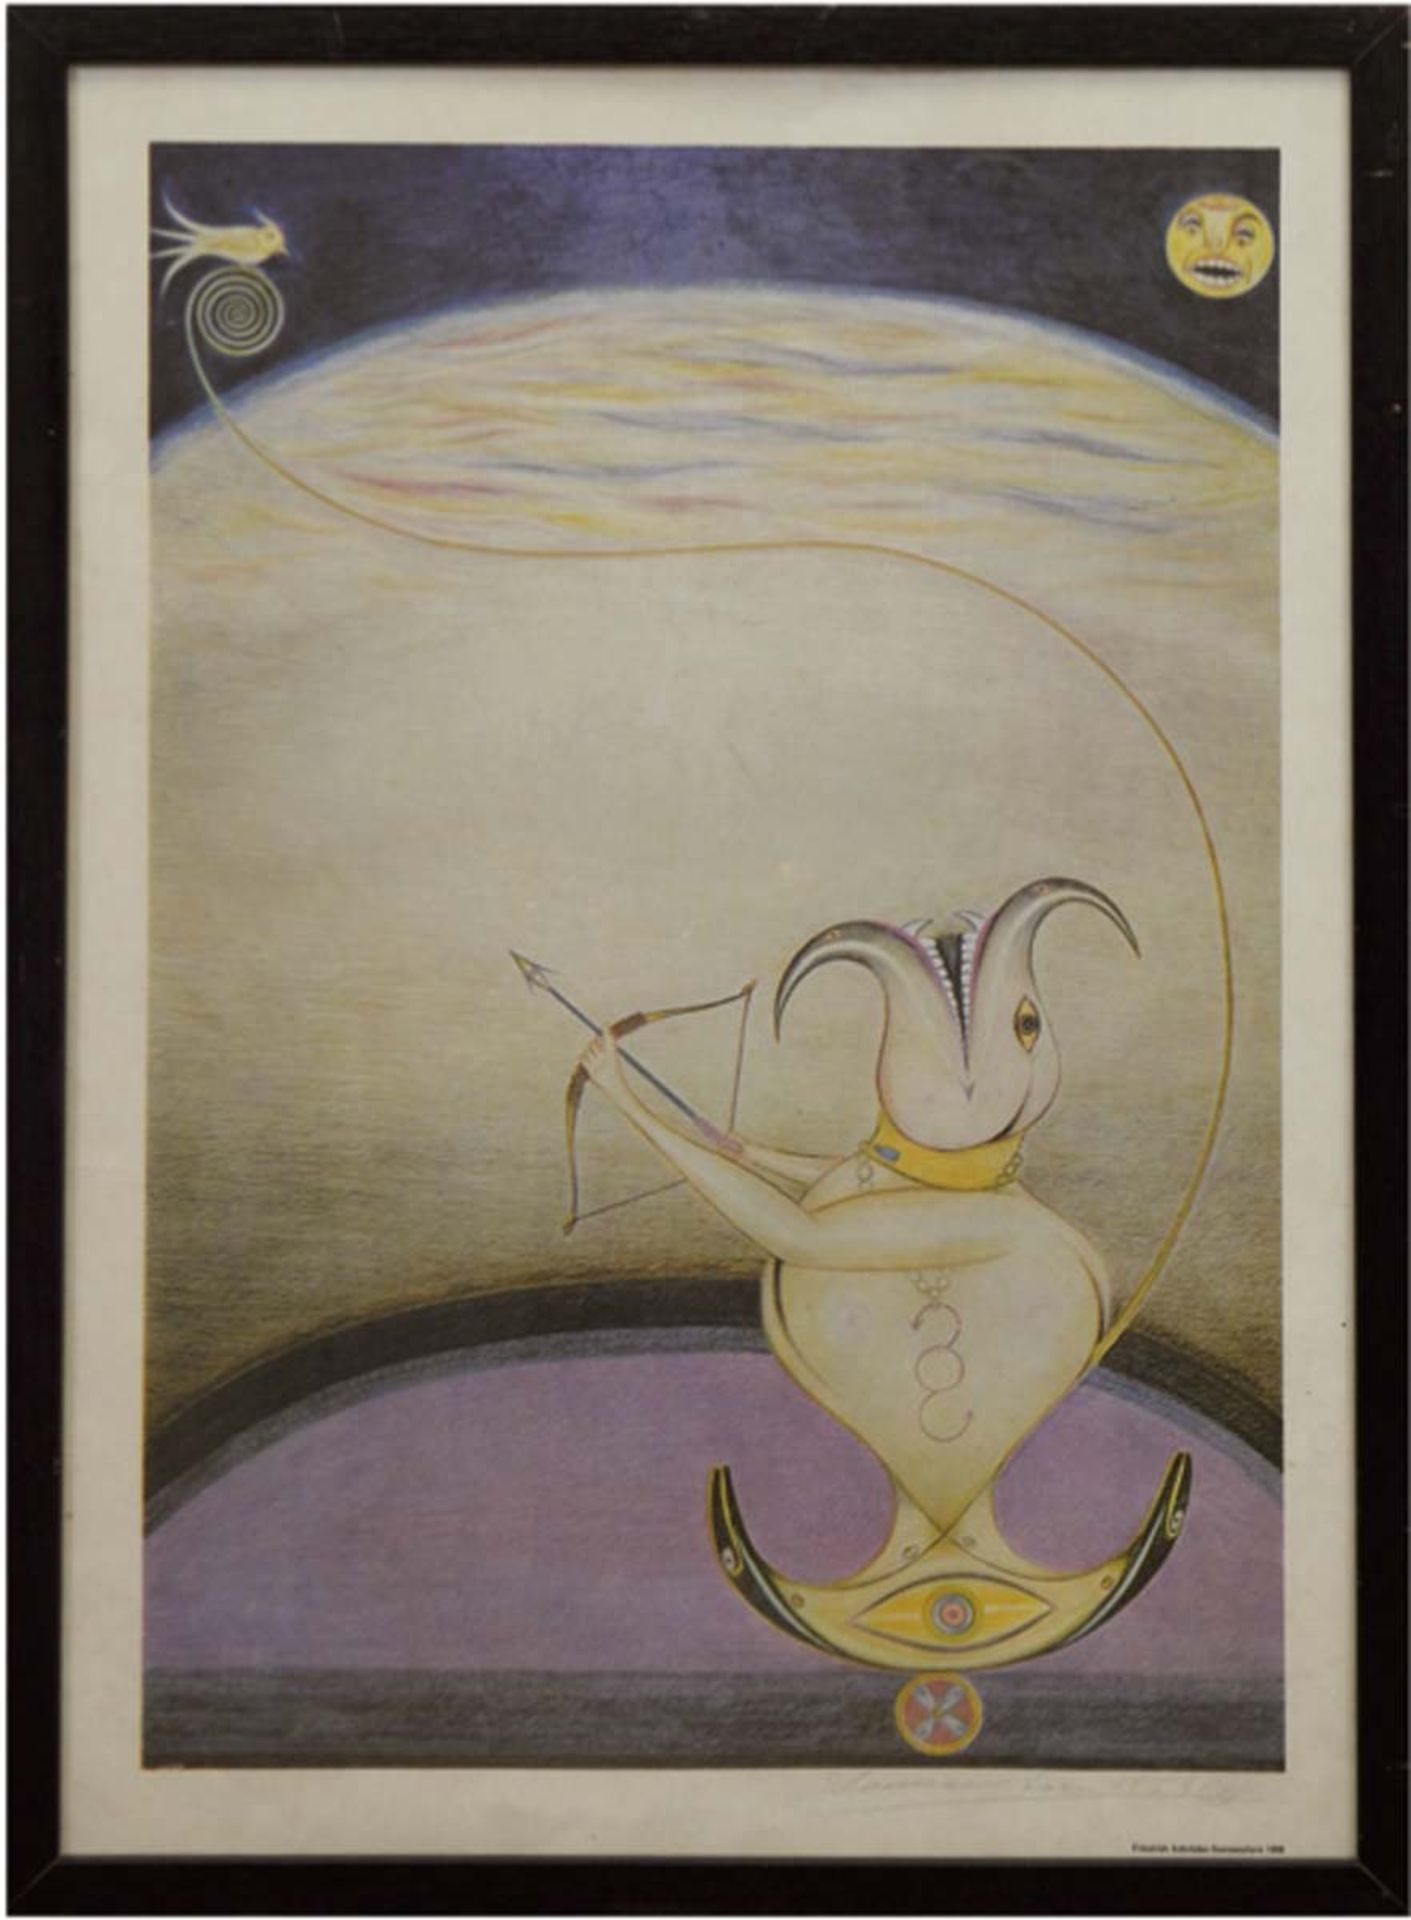 Schröder-Sonnenstern, Friedrich (1892-1982) "Mondgeistfahrt", Farbdruck 1958, mitBleistift